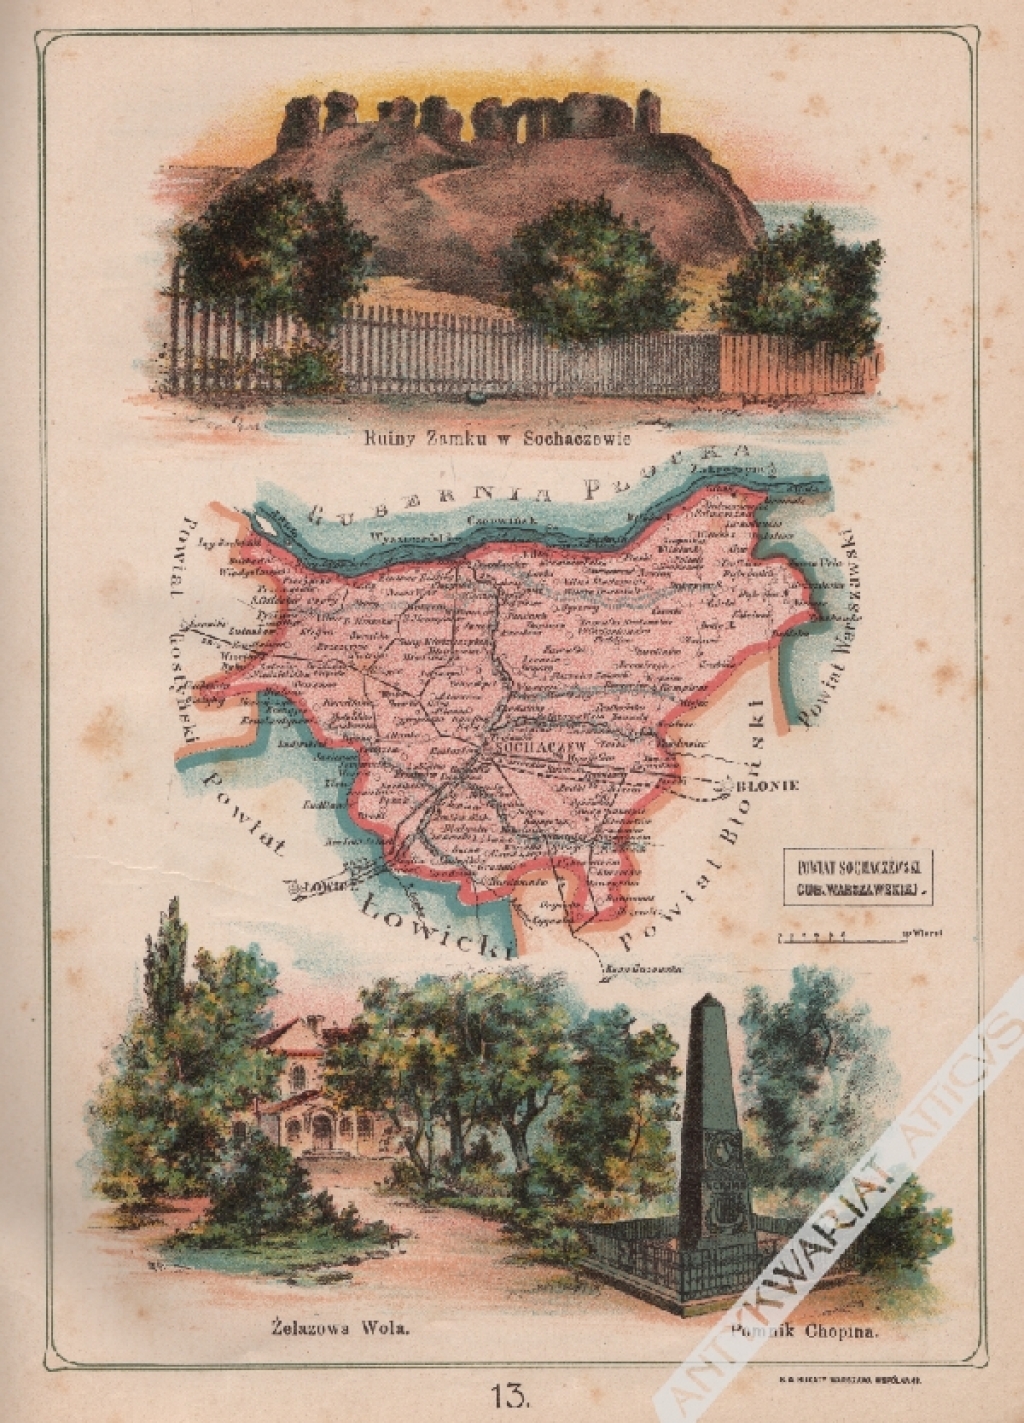 [mapa, 1907] Powiat Sochaczewski Gubernii Warszawskiej. Ruiny Zamku w Sochaczewie. Żelazowa Wola. Pomnik Chopina.